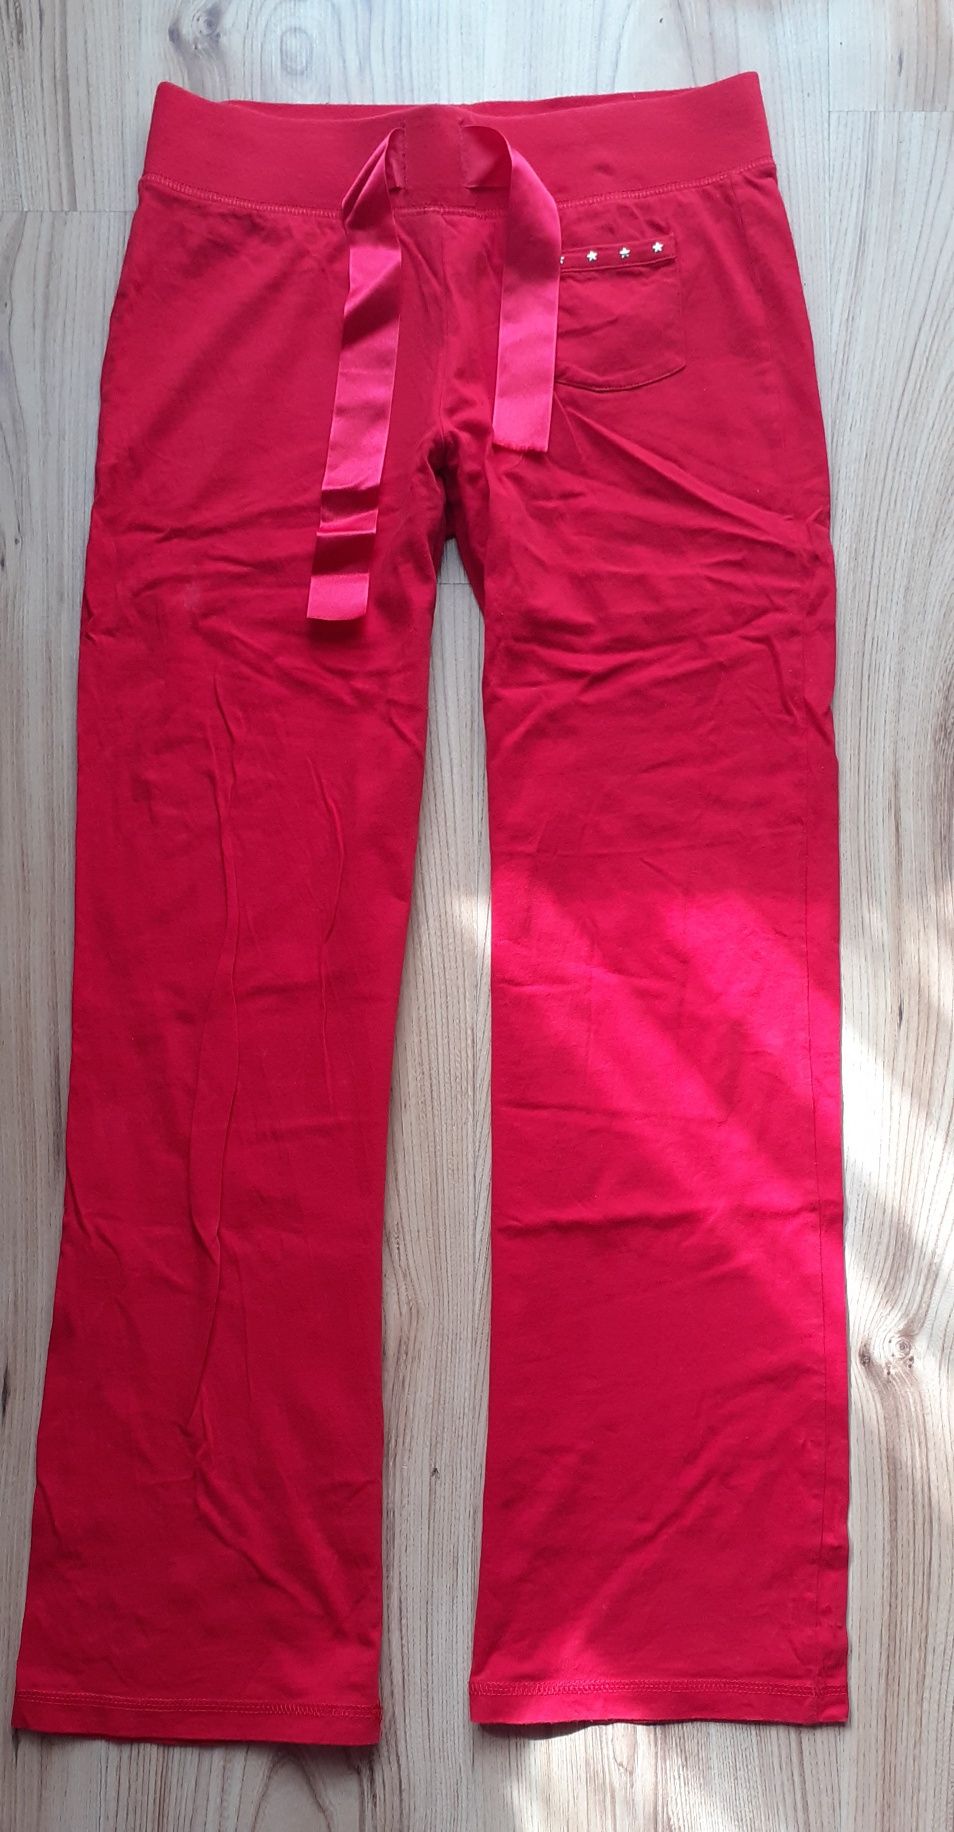 George czerwone spodnie / dresy damskie / dziewczęce S 36